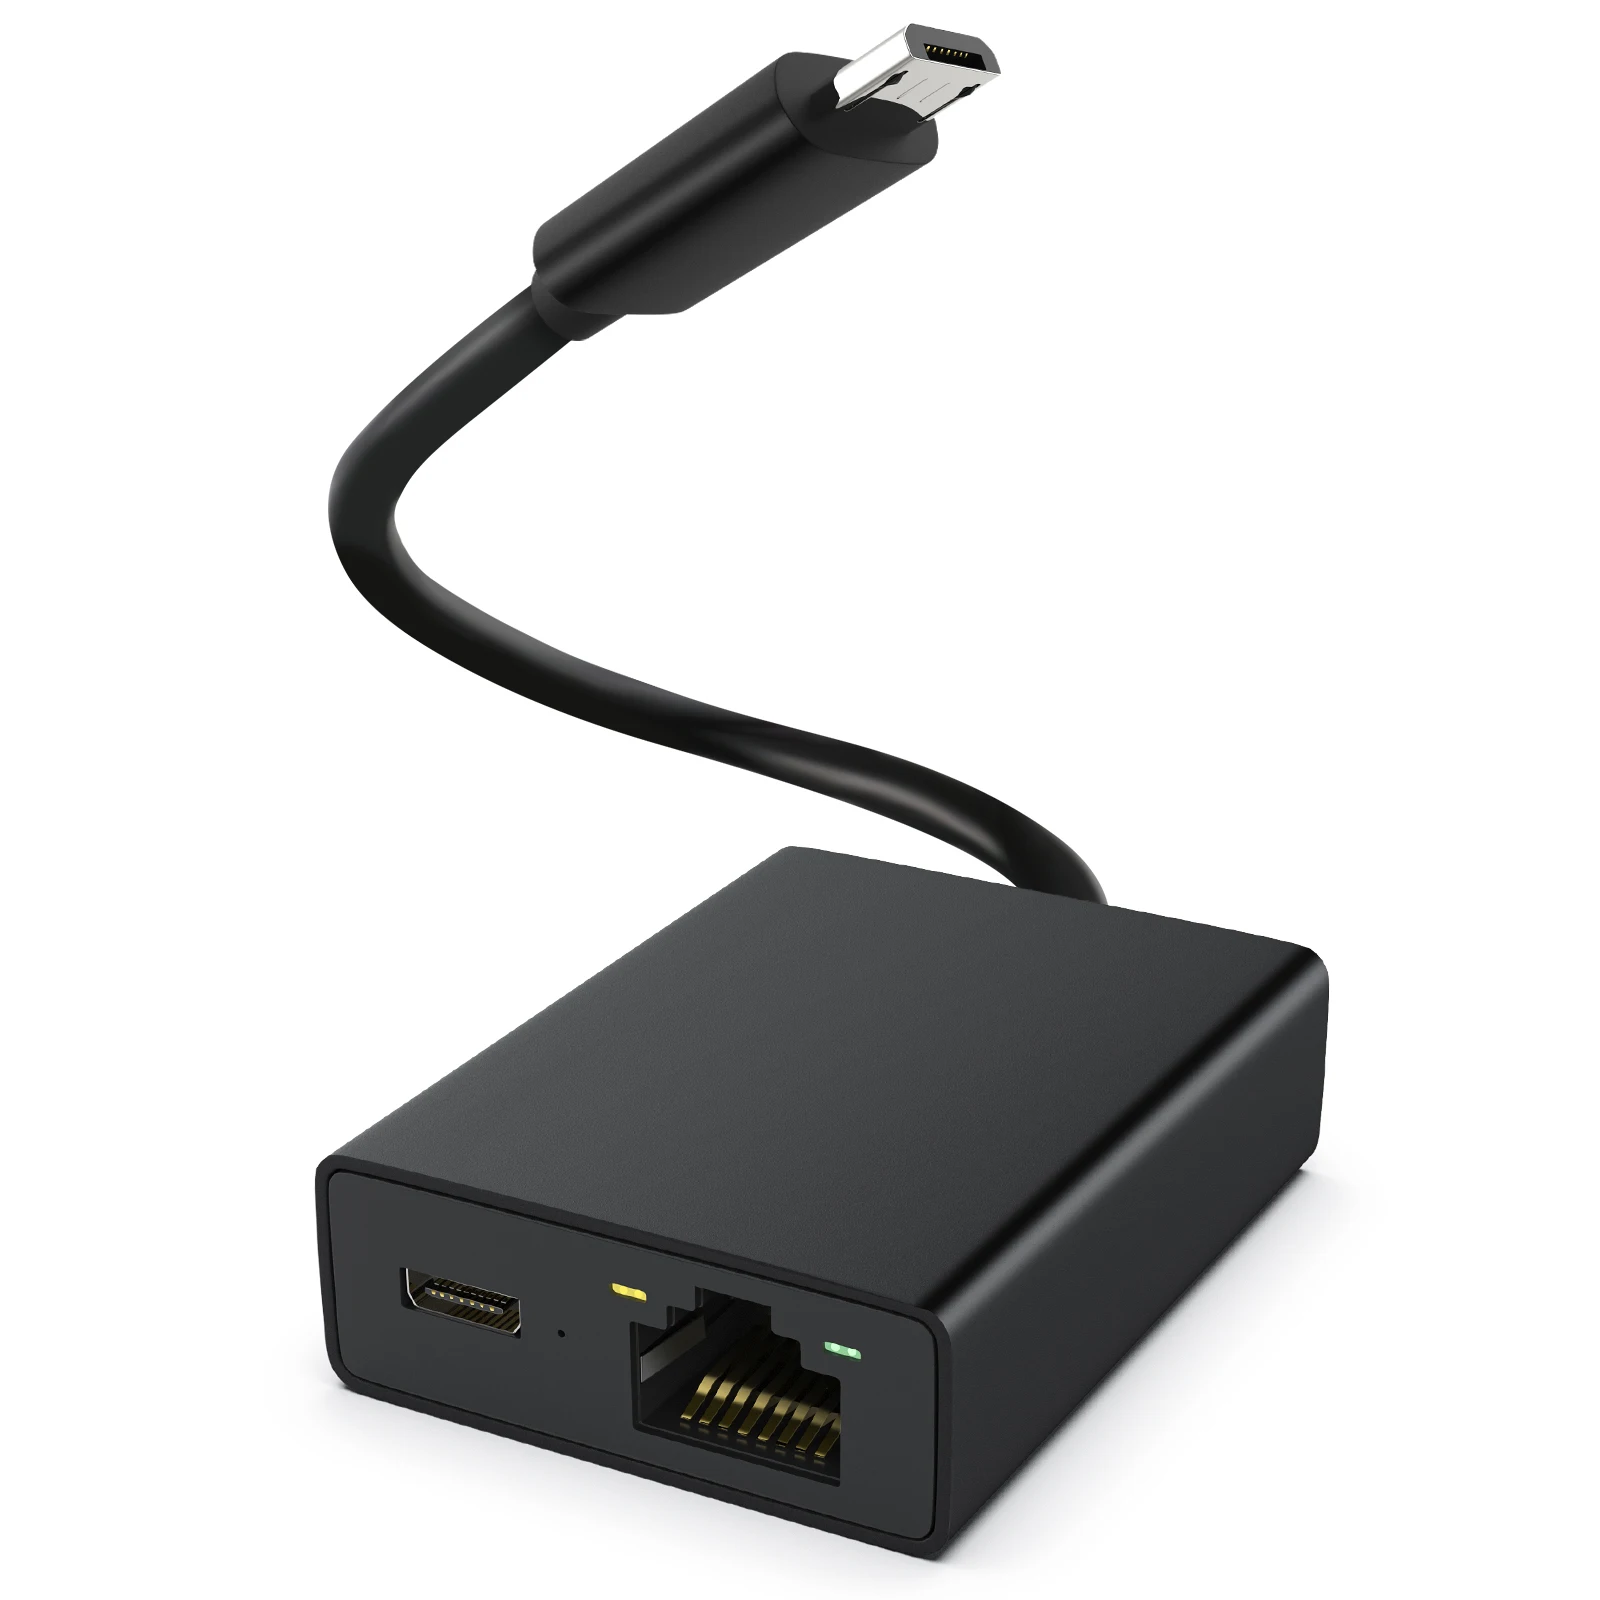 Adaptador Ethernet USB de 10/100 Mbps, Micro USB 2,0 a RJ45 para Fire  TV/Google TV Stick, tarjeta de red USB - AliExpress